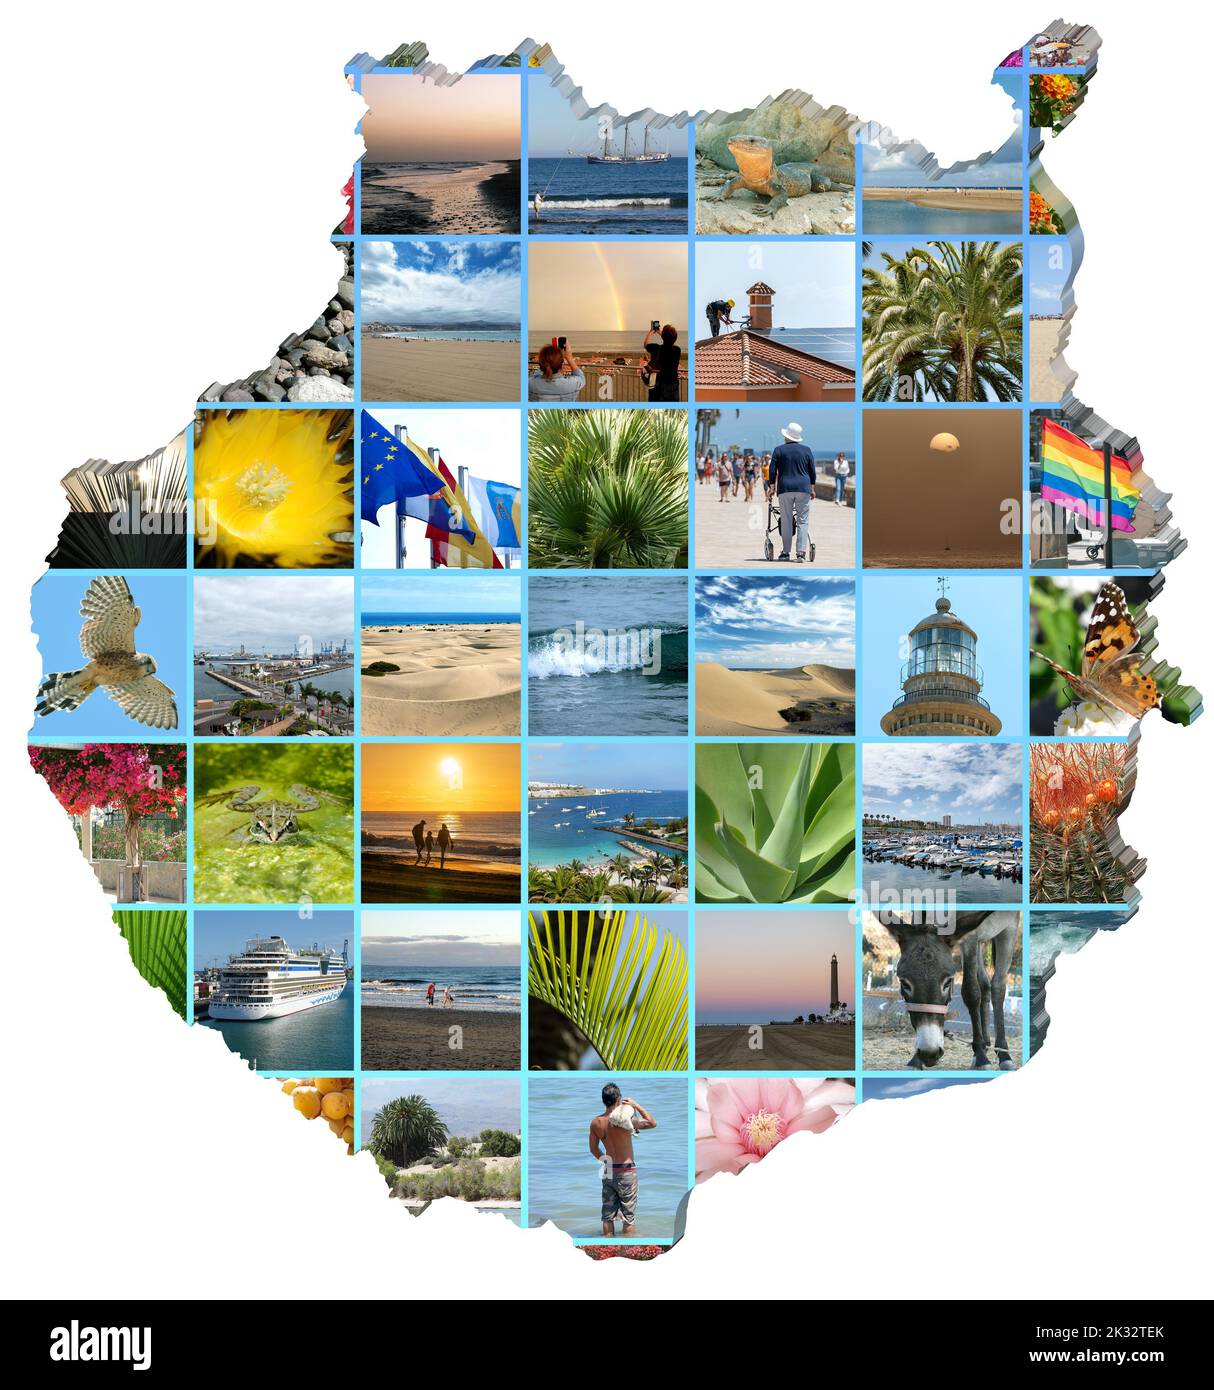 Collage de fotos de Gran Canaria en el mapa de Gran Canaria, fondo blanco. Foto de stock